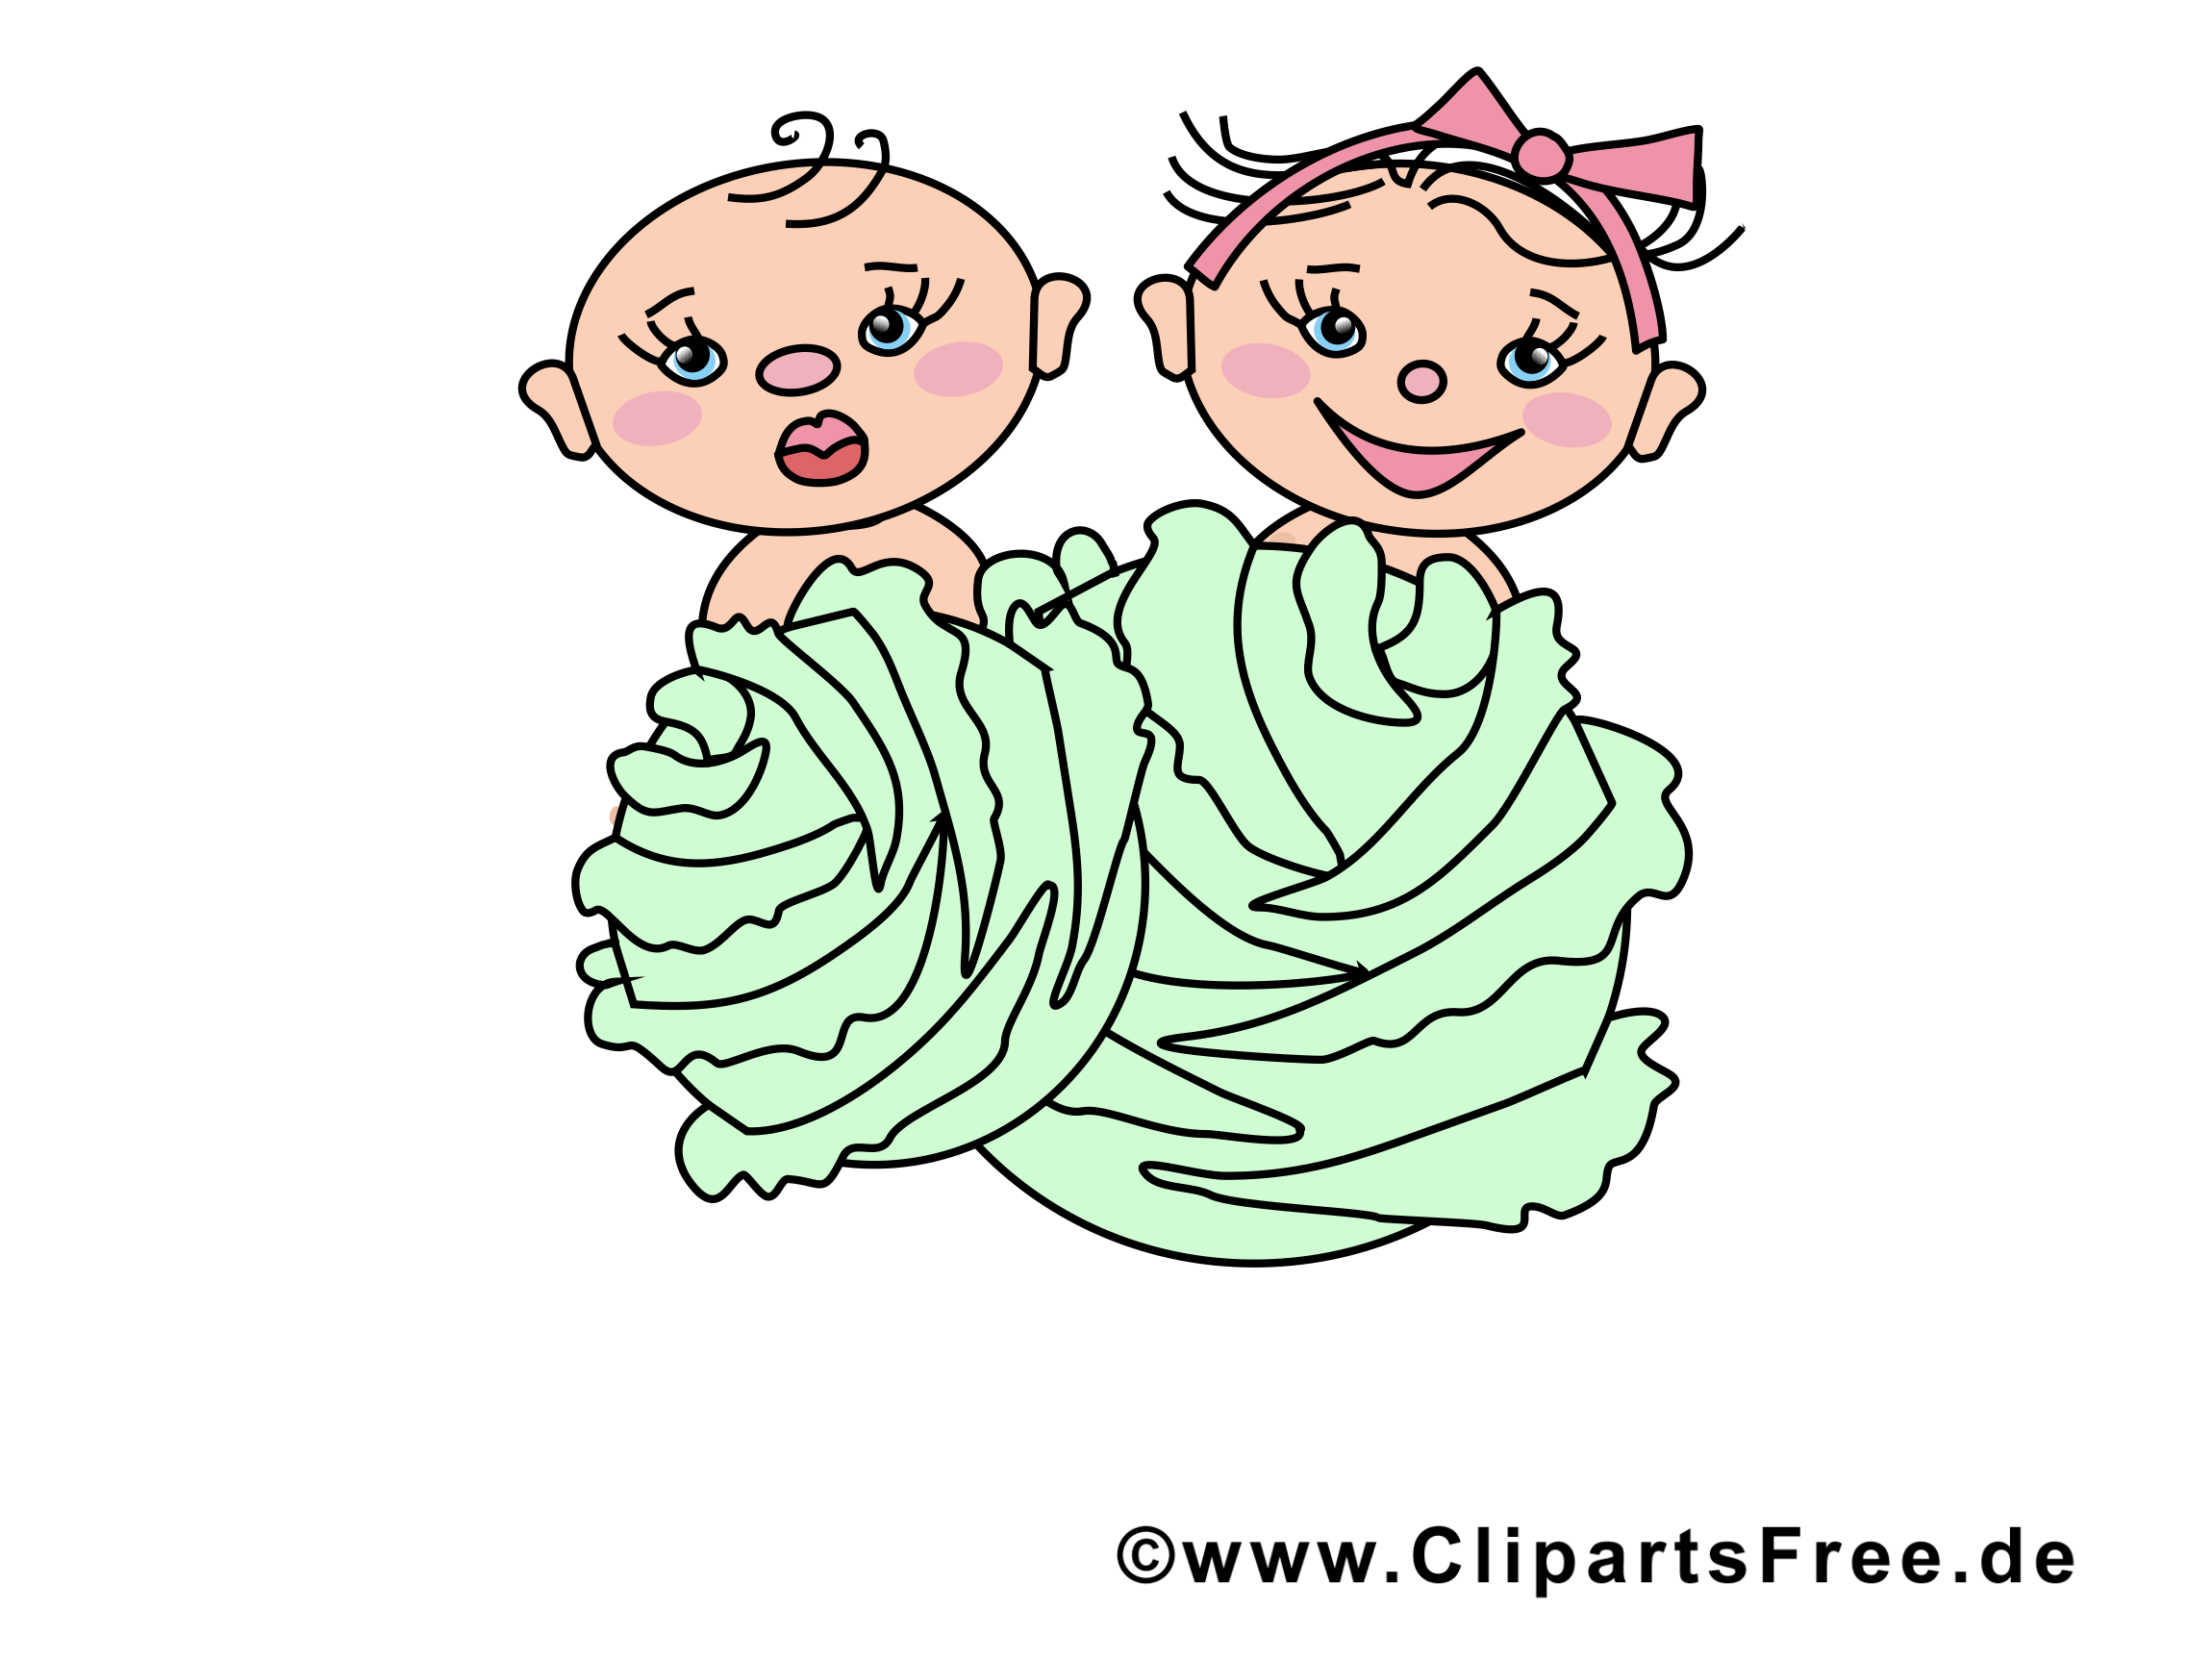 Enfants dessin gratuit - Maternelle image gratuite